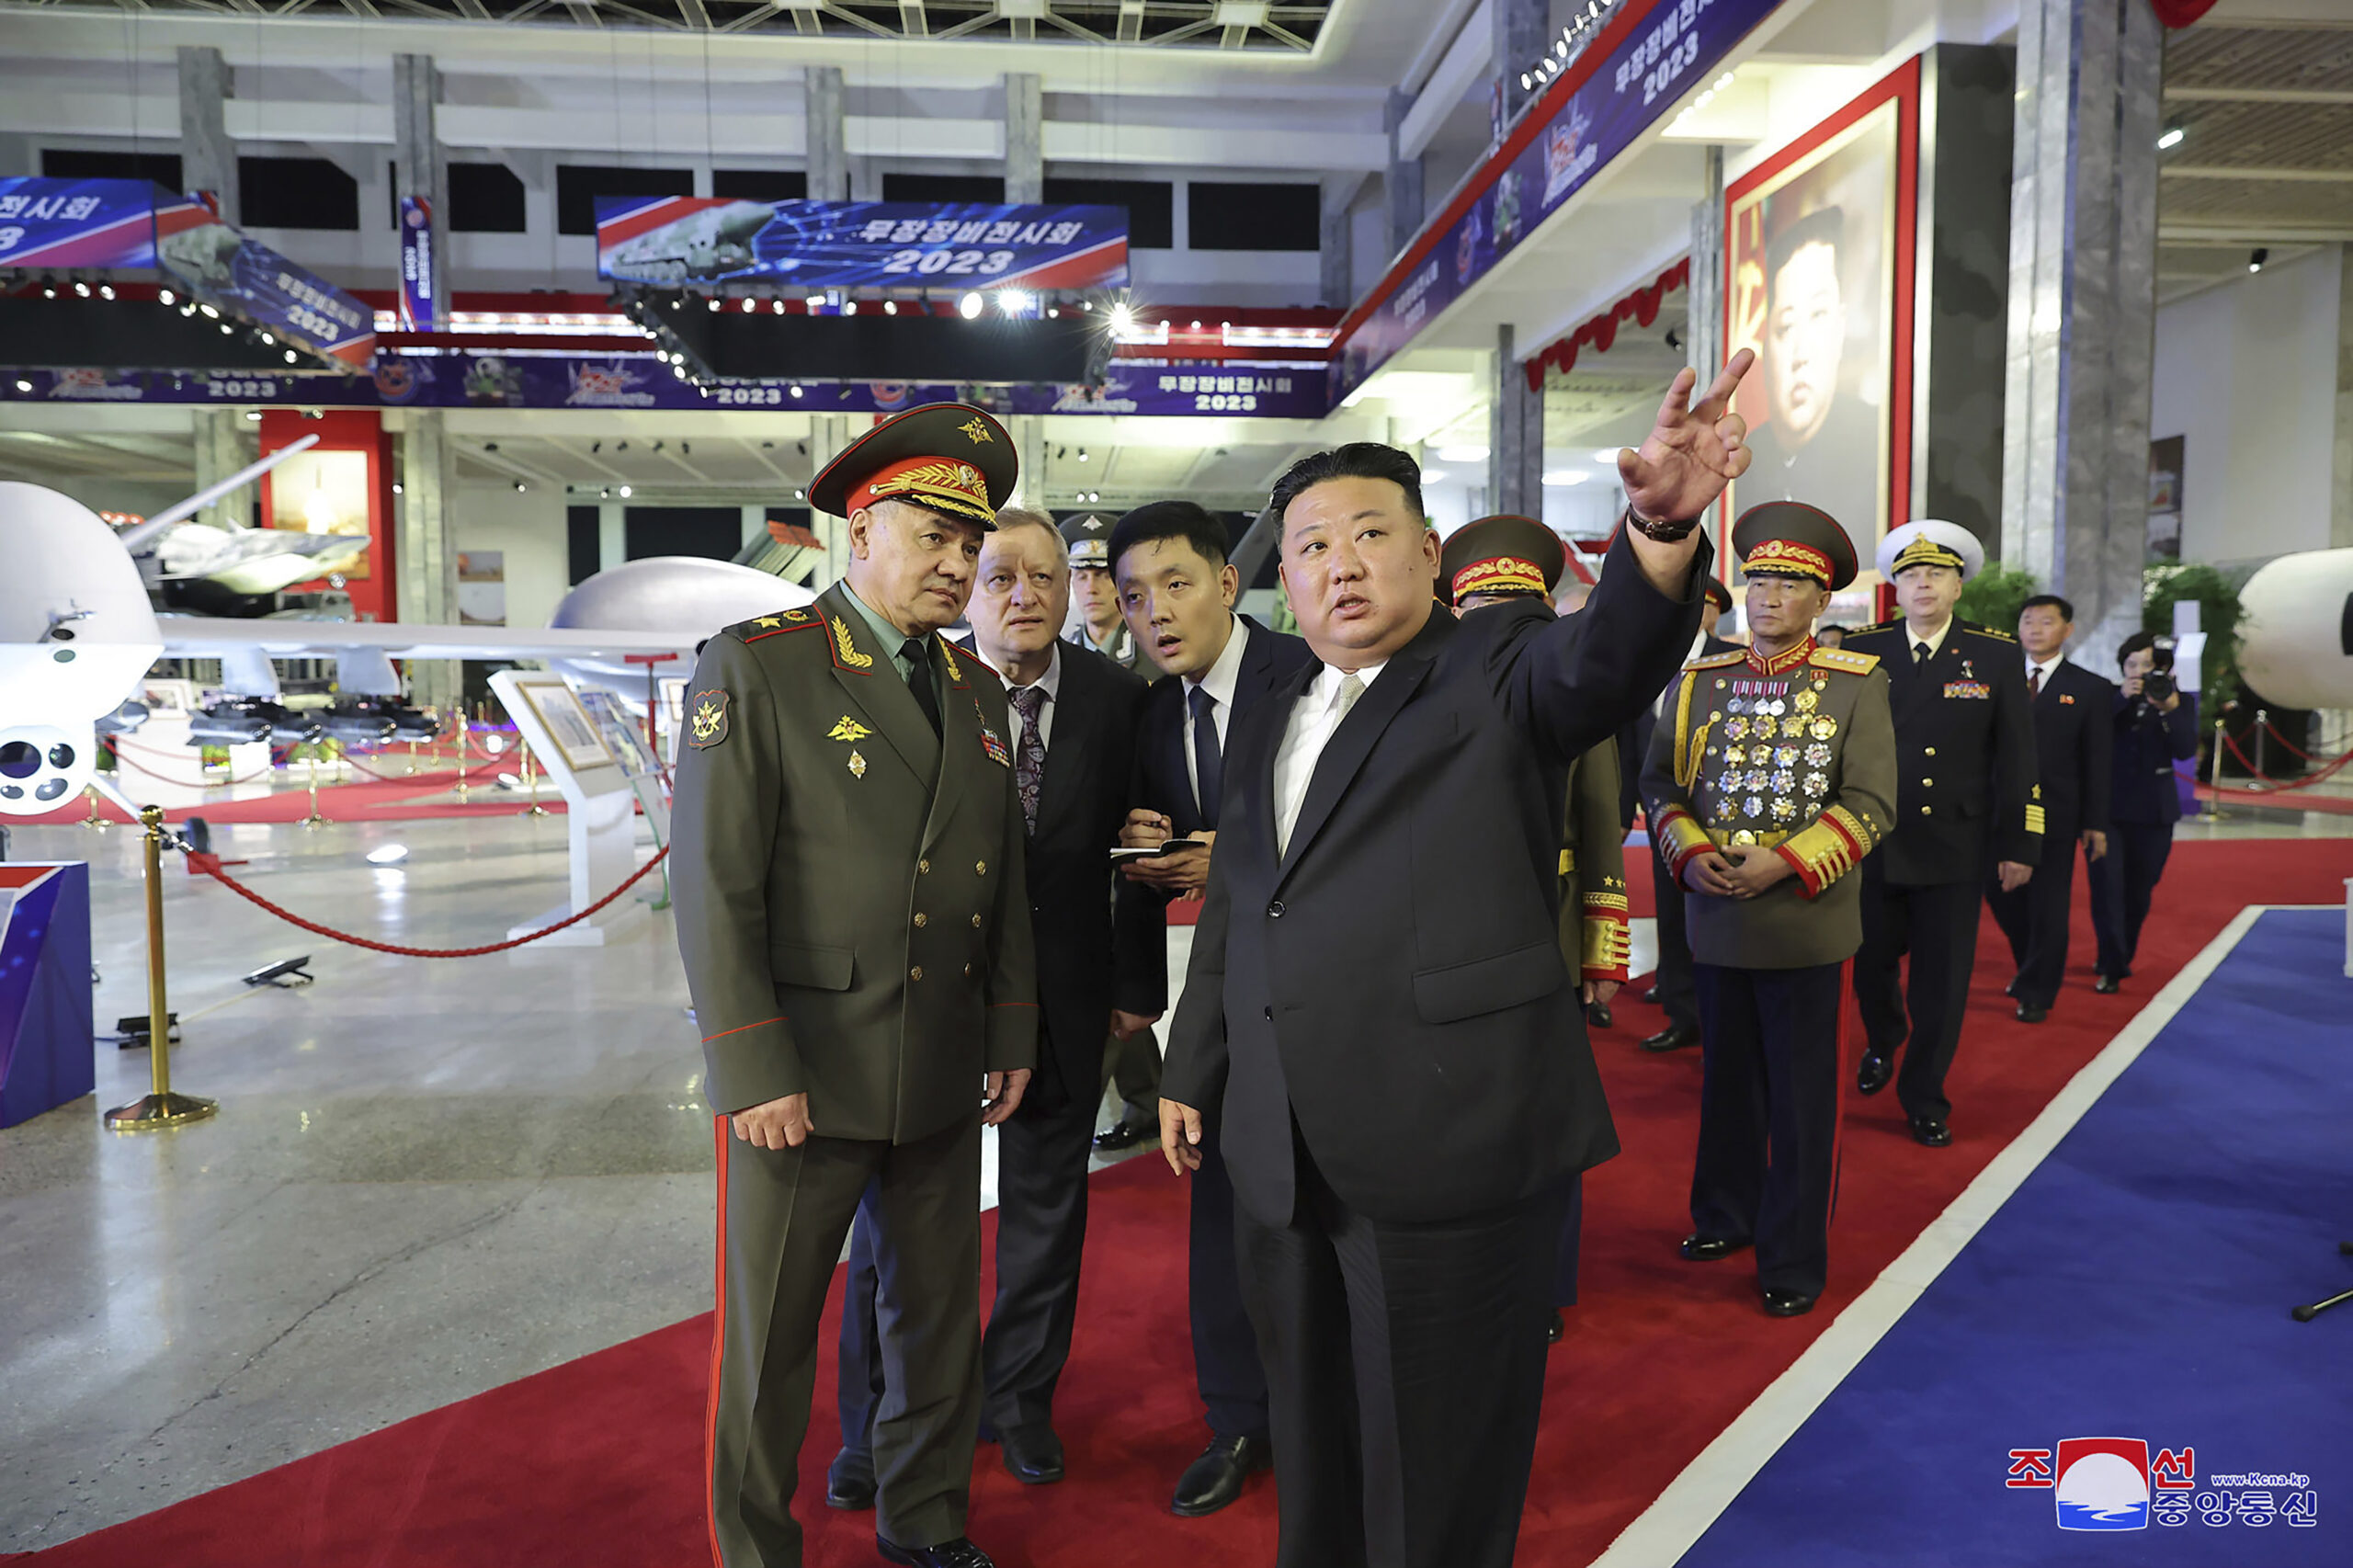 Βόρεια Κορέα: Ο Κιμ Γιονγκ Ουν παρακολουθεί στρατιωτική παρέλαση κατα την οποία  επιδεικνύονται νέοι ICBM και UAVs